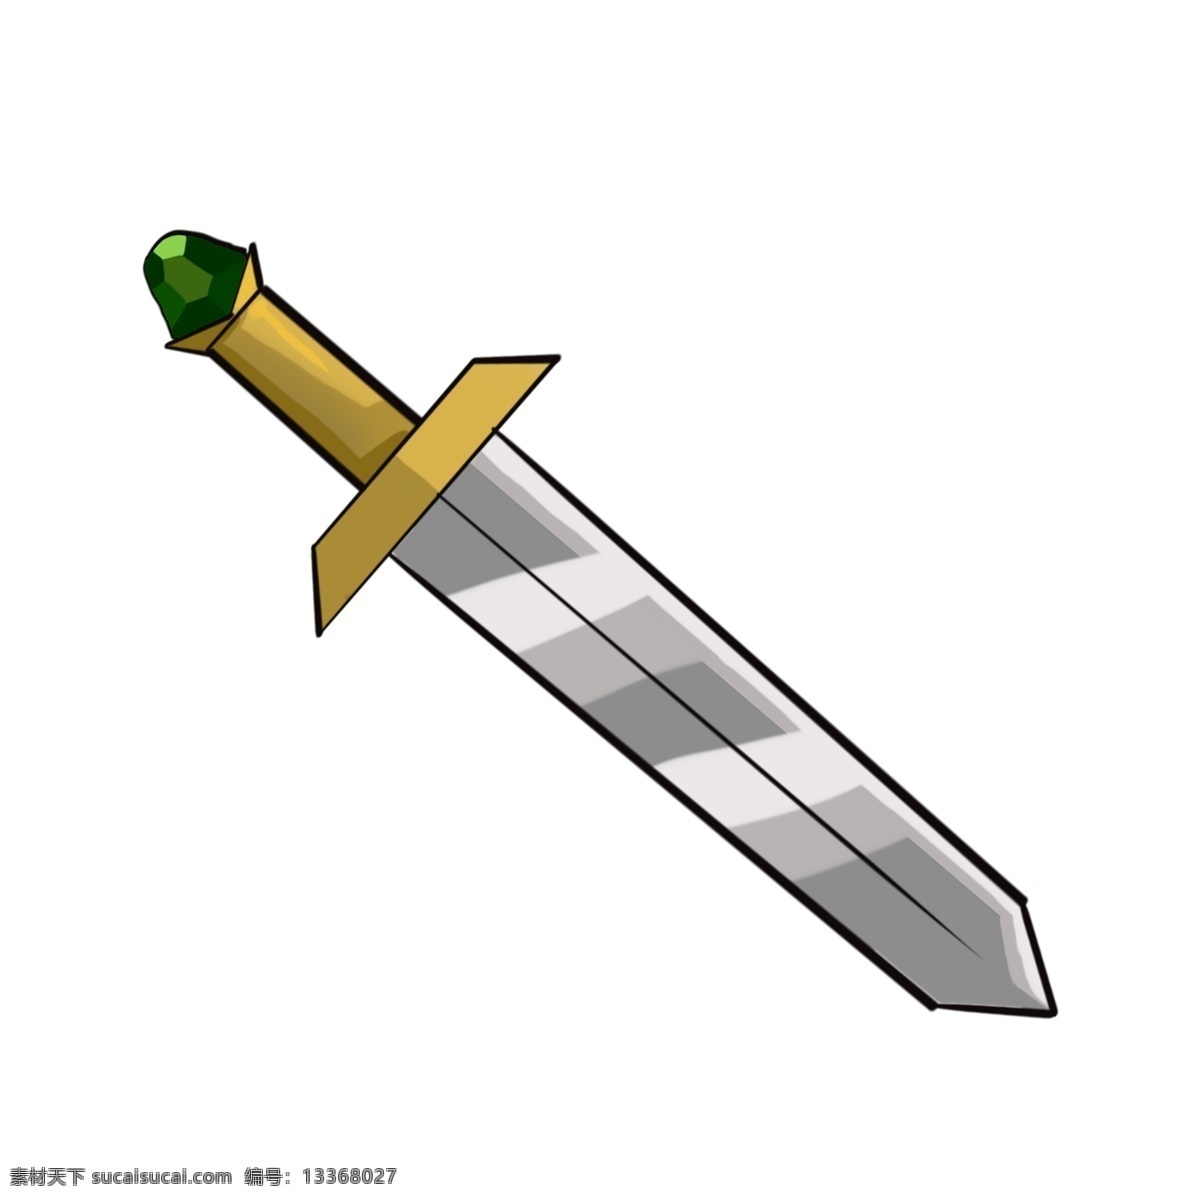 尖尖 创意 剑 插图 玩具剑 尖尖的剑 立体剑 一把剑 黄色手把 银色武器 武器剑 卡通剑 卡通插图